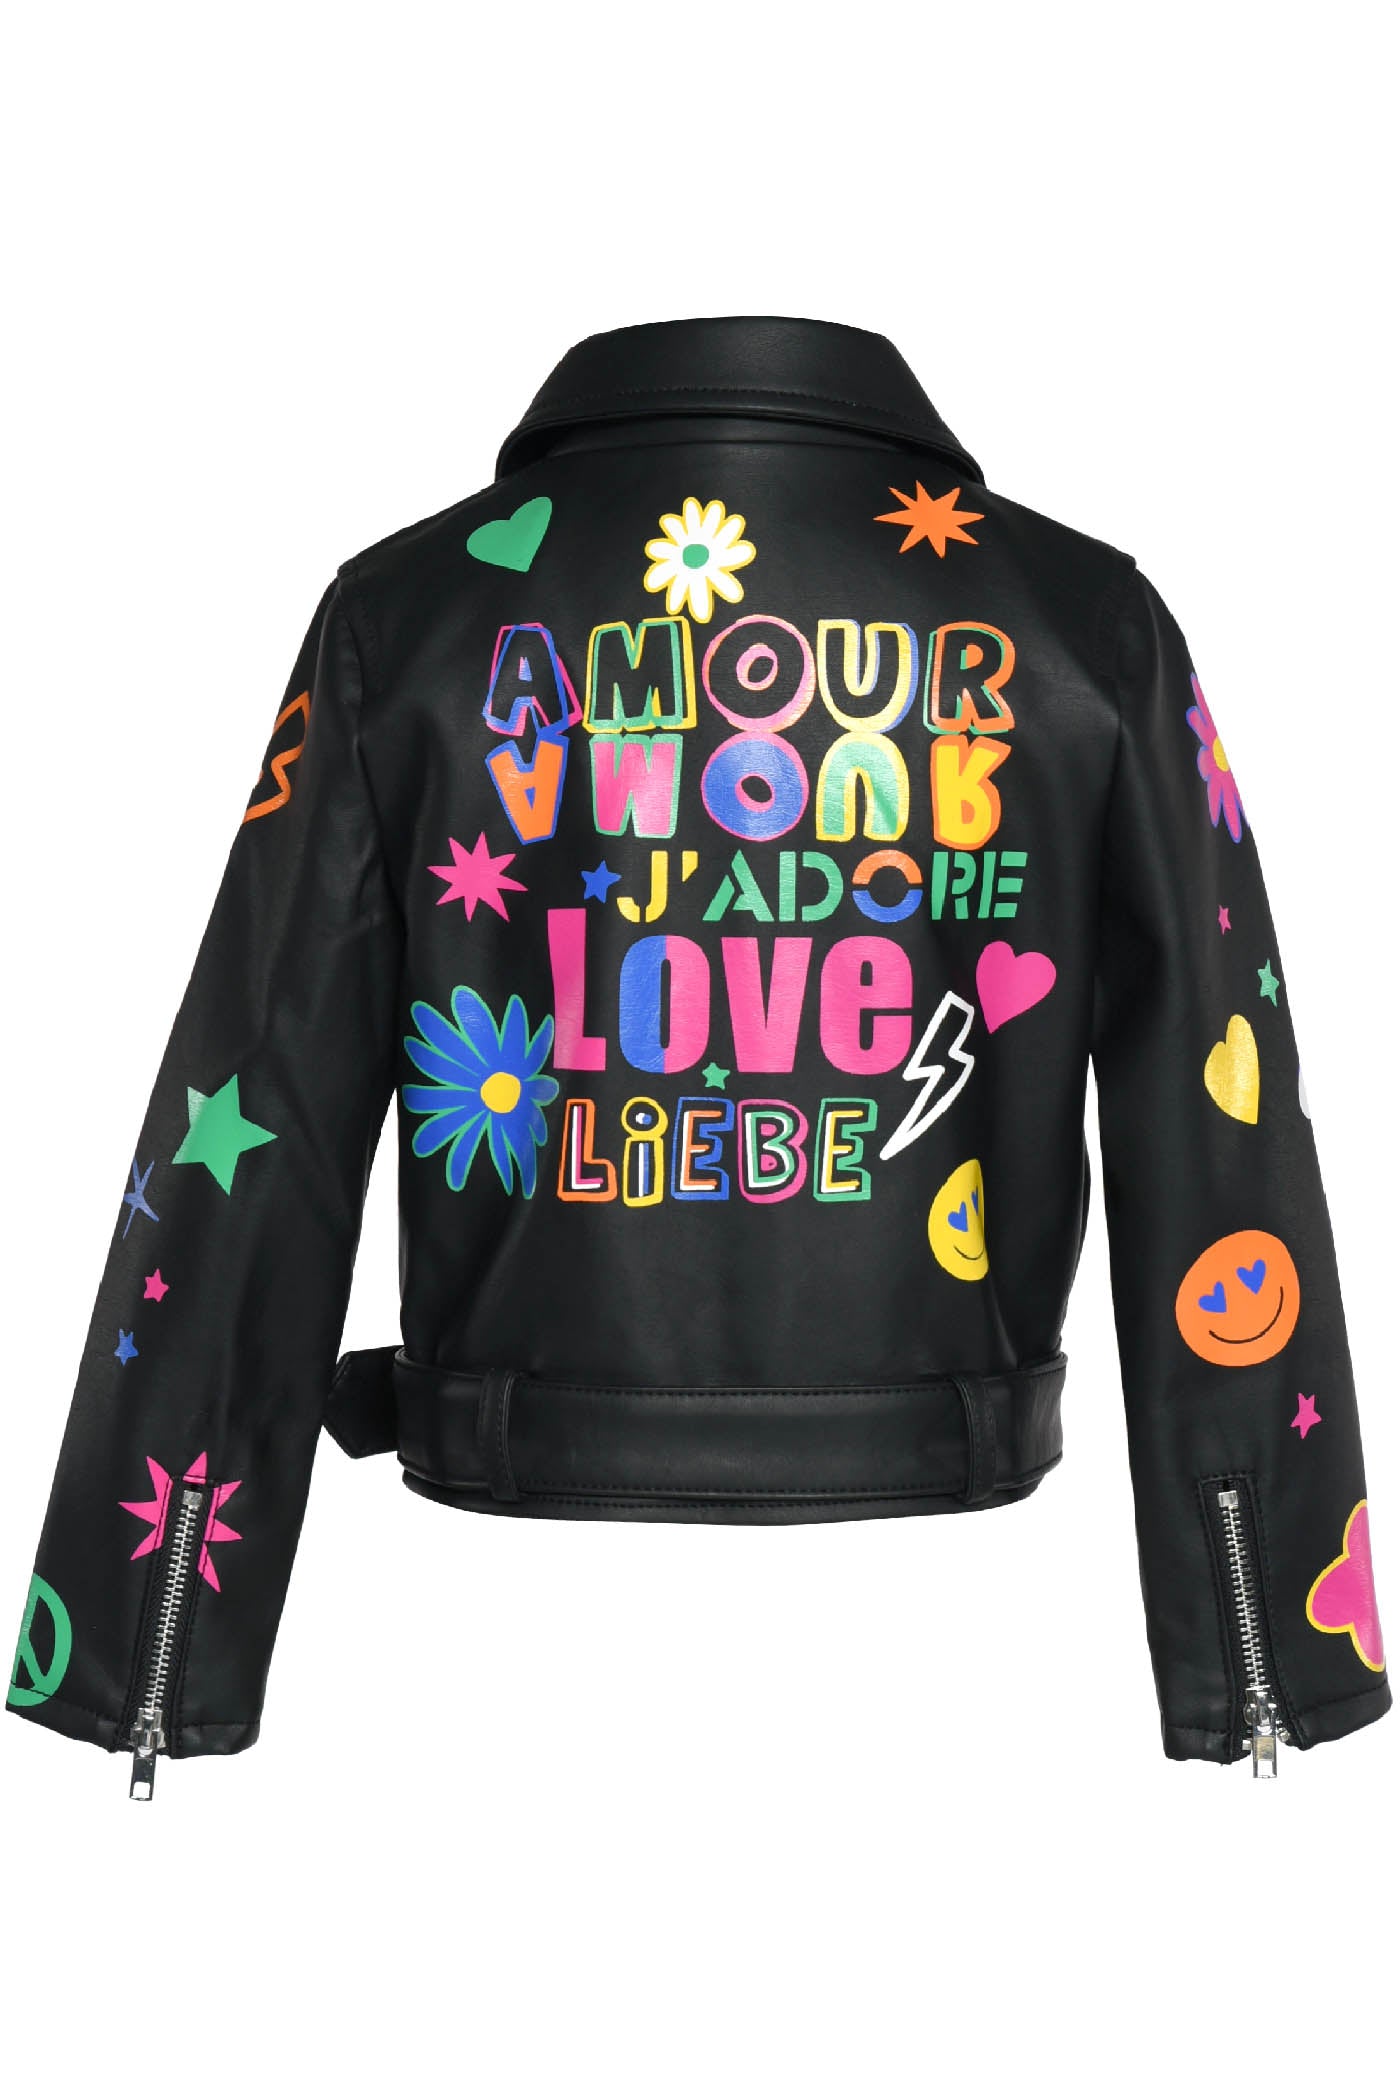 Amour Moto Jacket